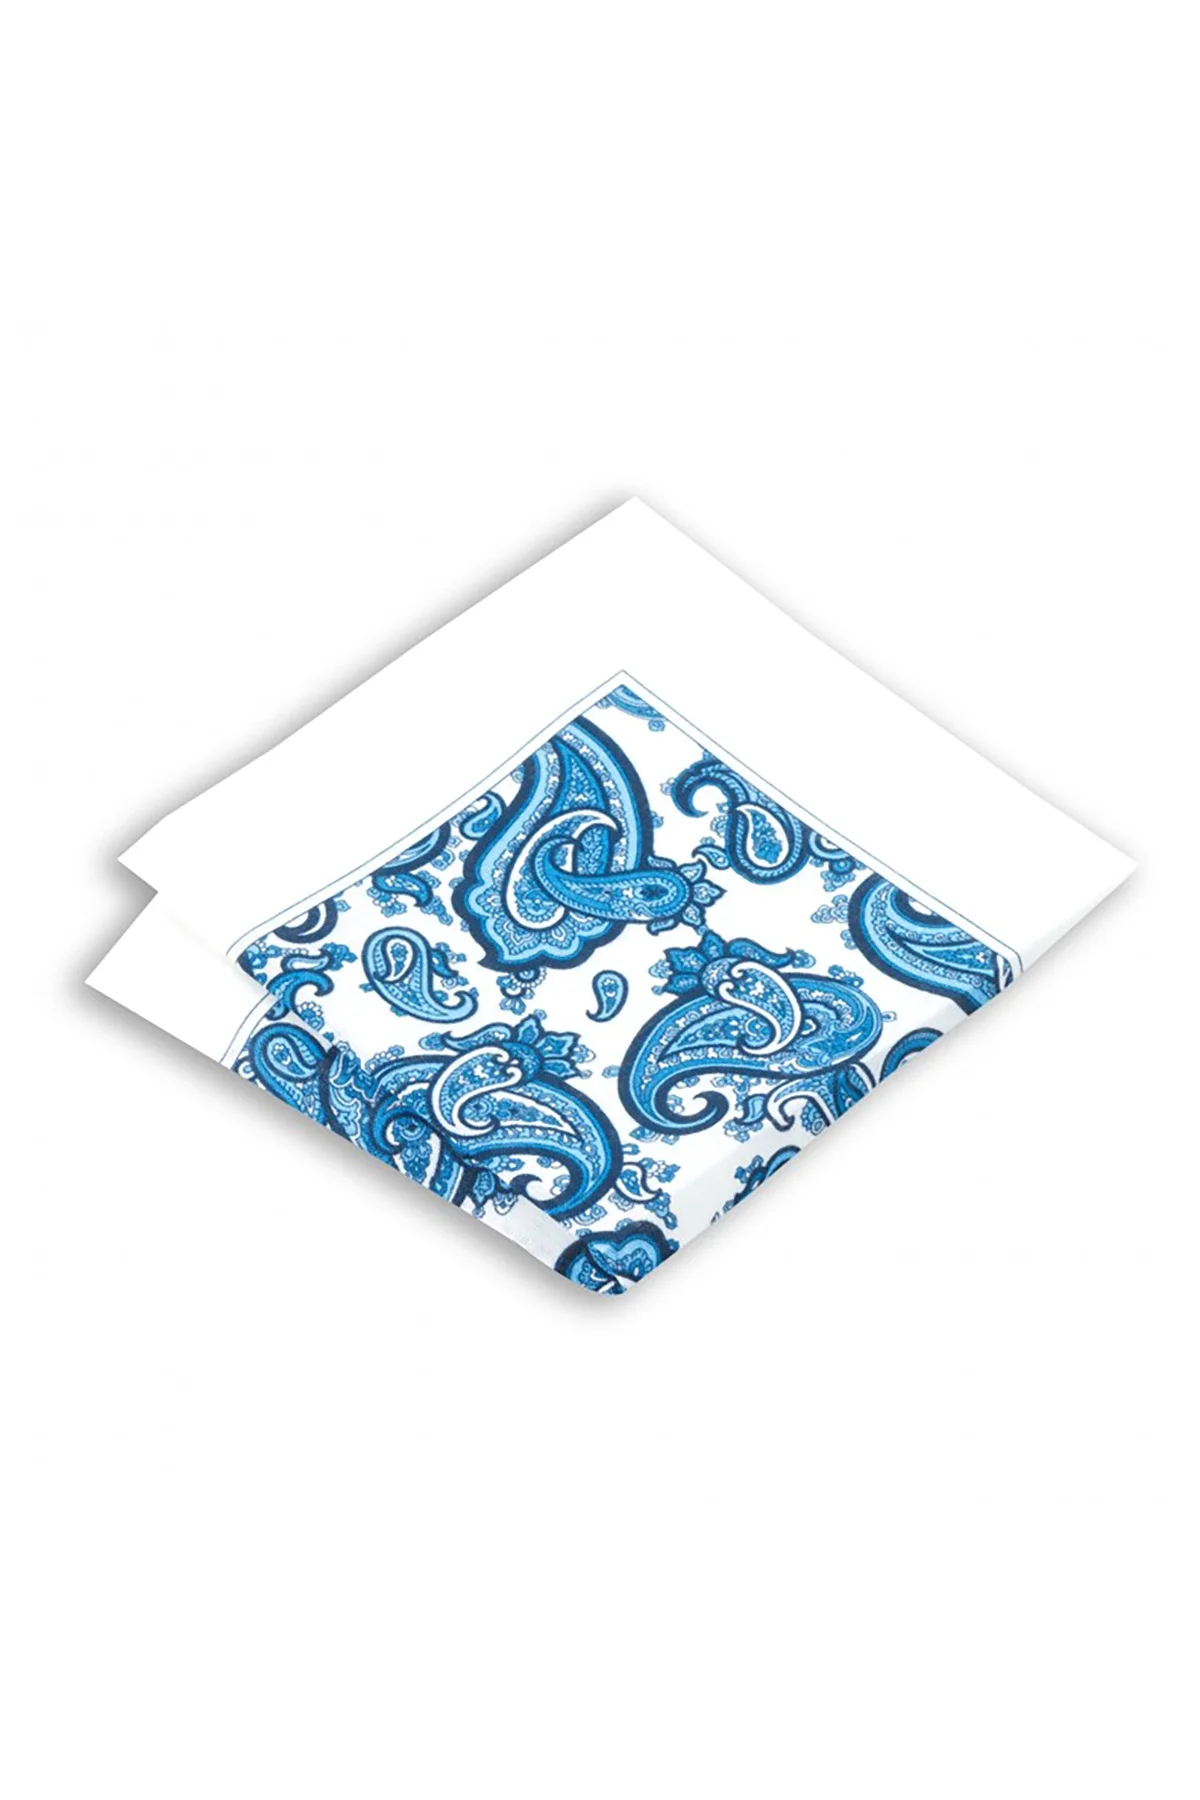 Мужской льняной Цветочный Карманный платок, Сделано в Италии, для 33x33 см, отличный наряд, льняные куртки, хорошее сочетание с хлопковыми кост... от AliExpress RU&CIS NEW